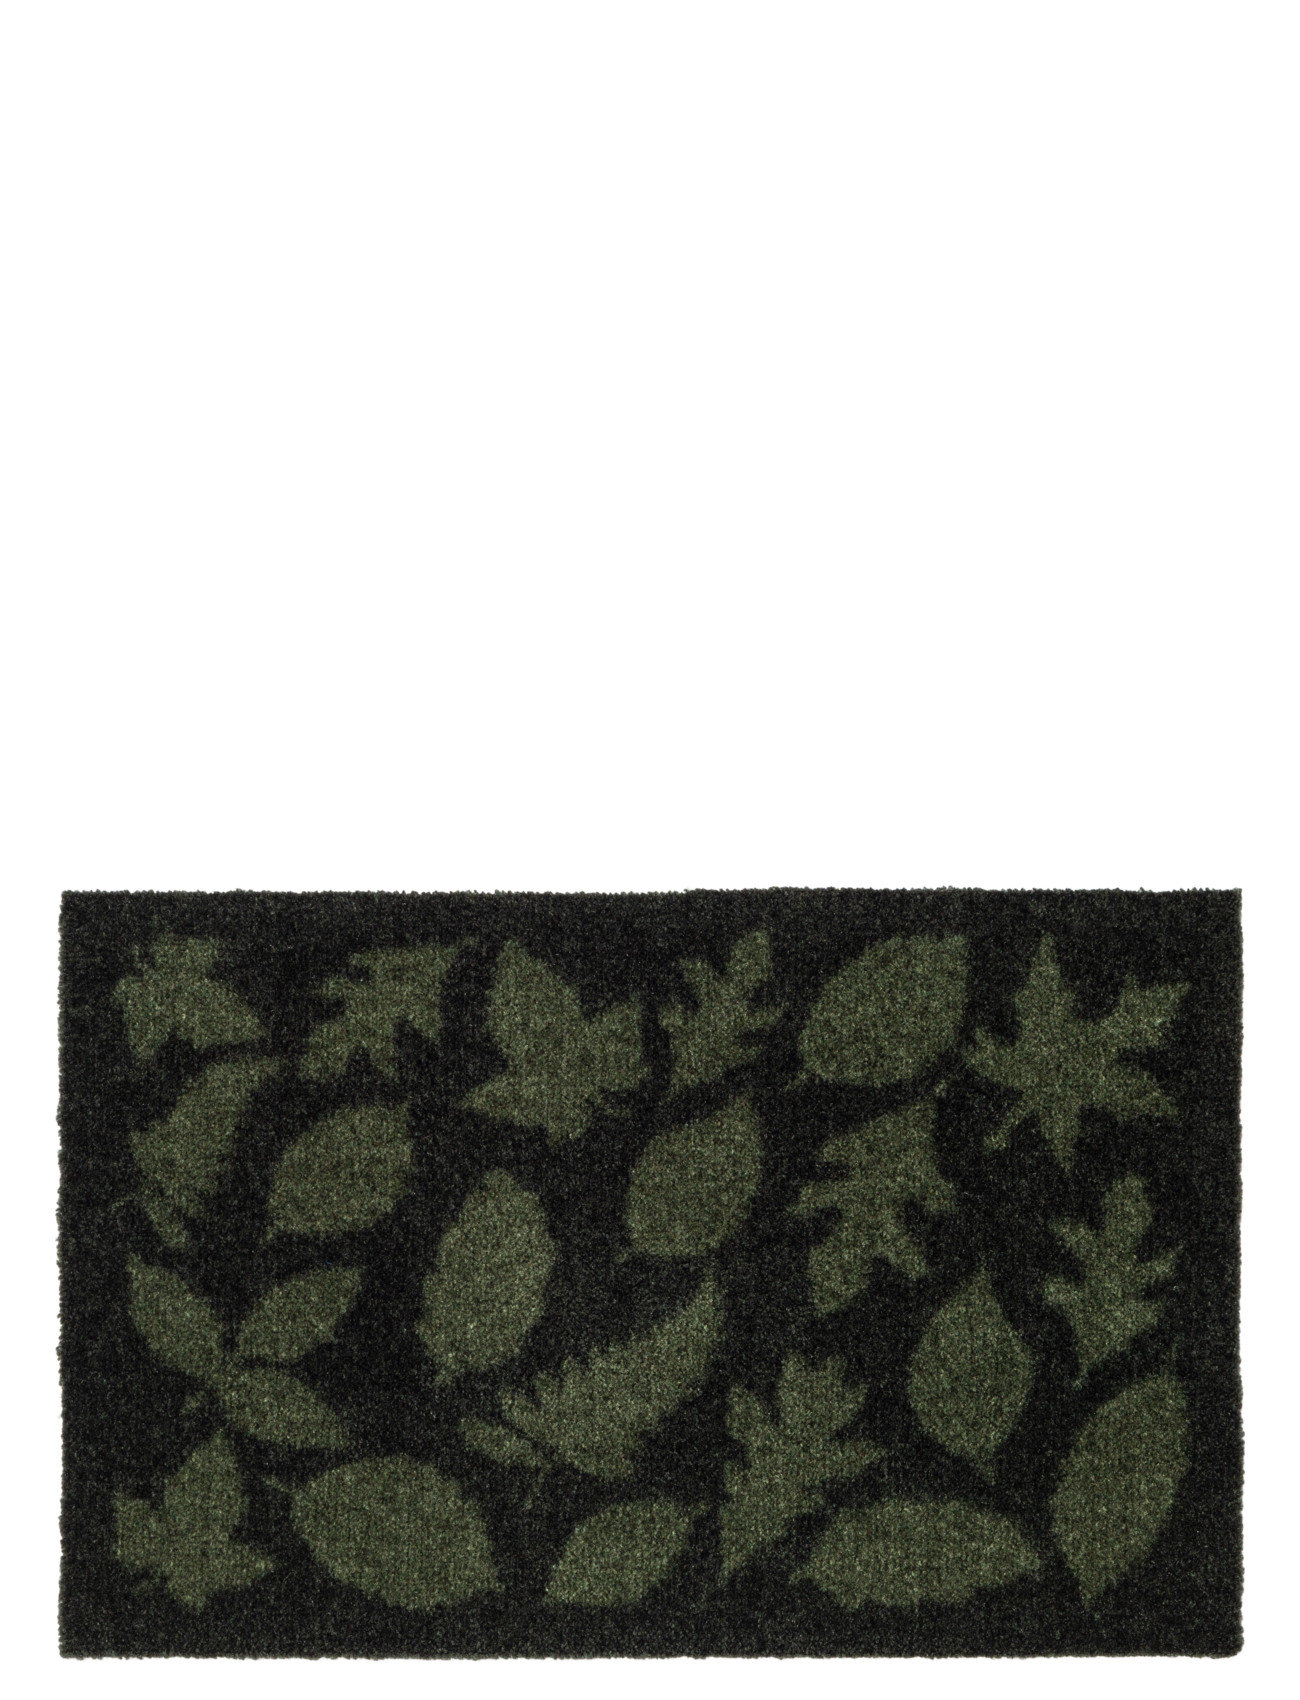 Floormat Polyamide, 60X40 Cm, Leaves Design Home Textiles Rugs & Carpets Door Mats Green Tica Copenhagen